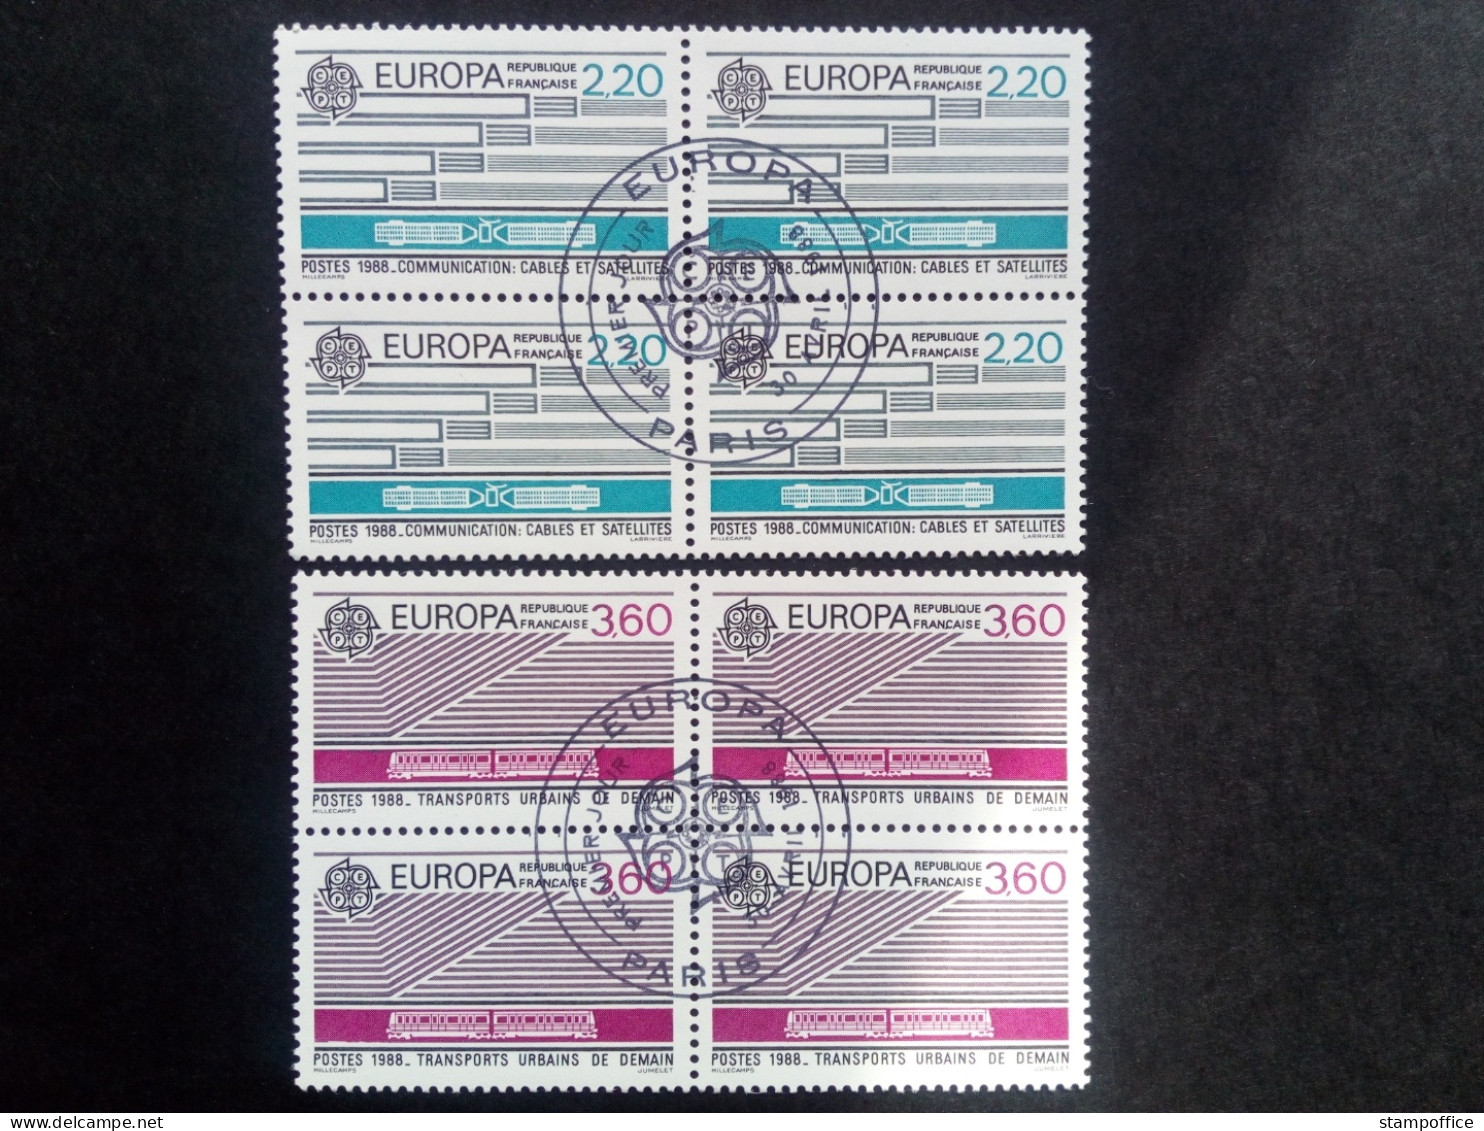 FRANKREICH MI-NR. 2667-2668 GESTEMPELT(USED) 4er BLOCK EUROPA 1988 TRANSPORT- Und KOMMUNIKATIONSMITTEL - 1988